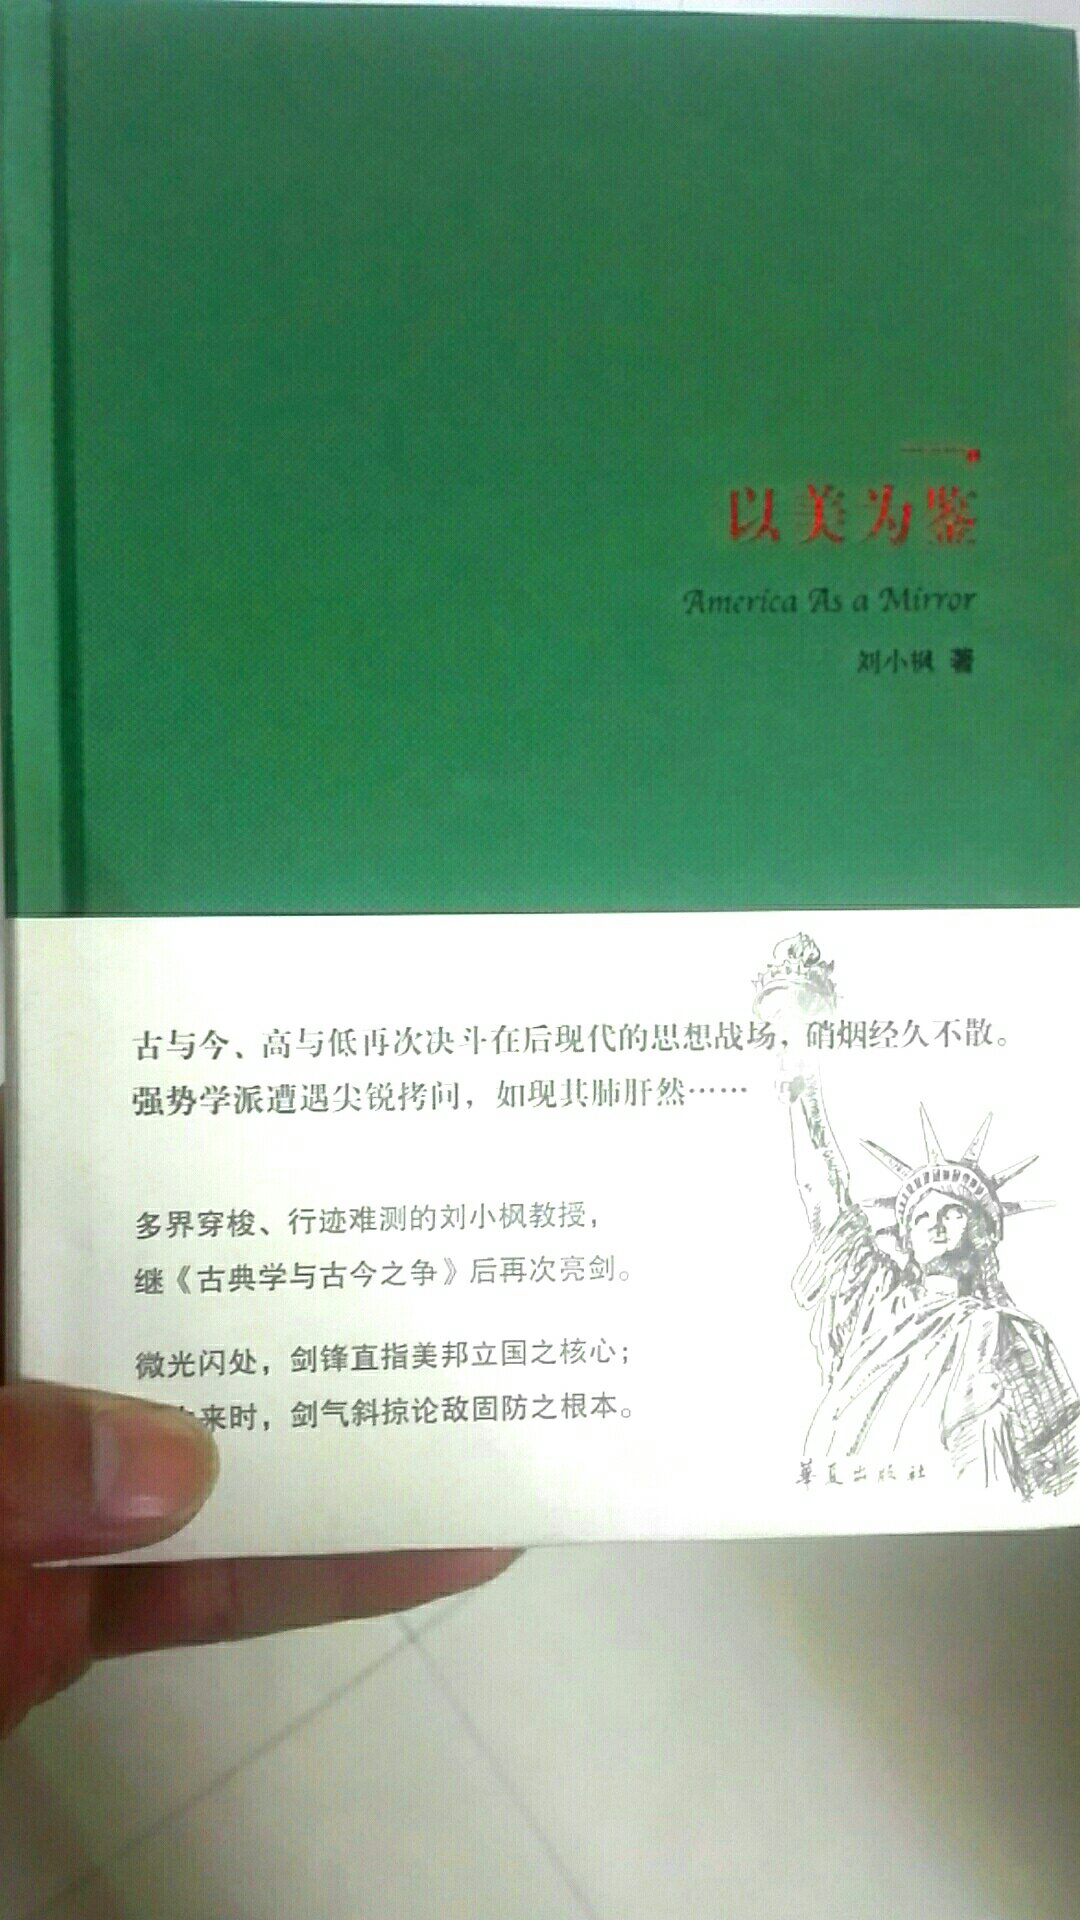 很喜欢看刘小枫的书，了解中古古今之争。